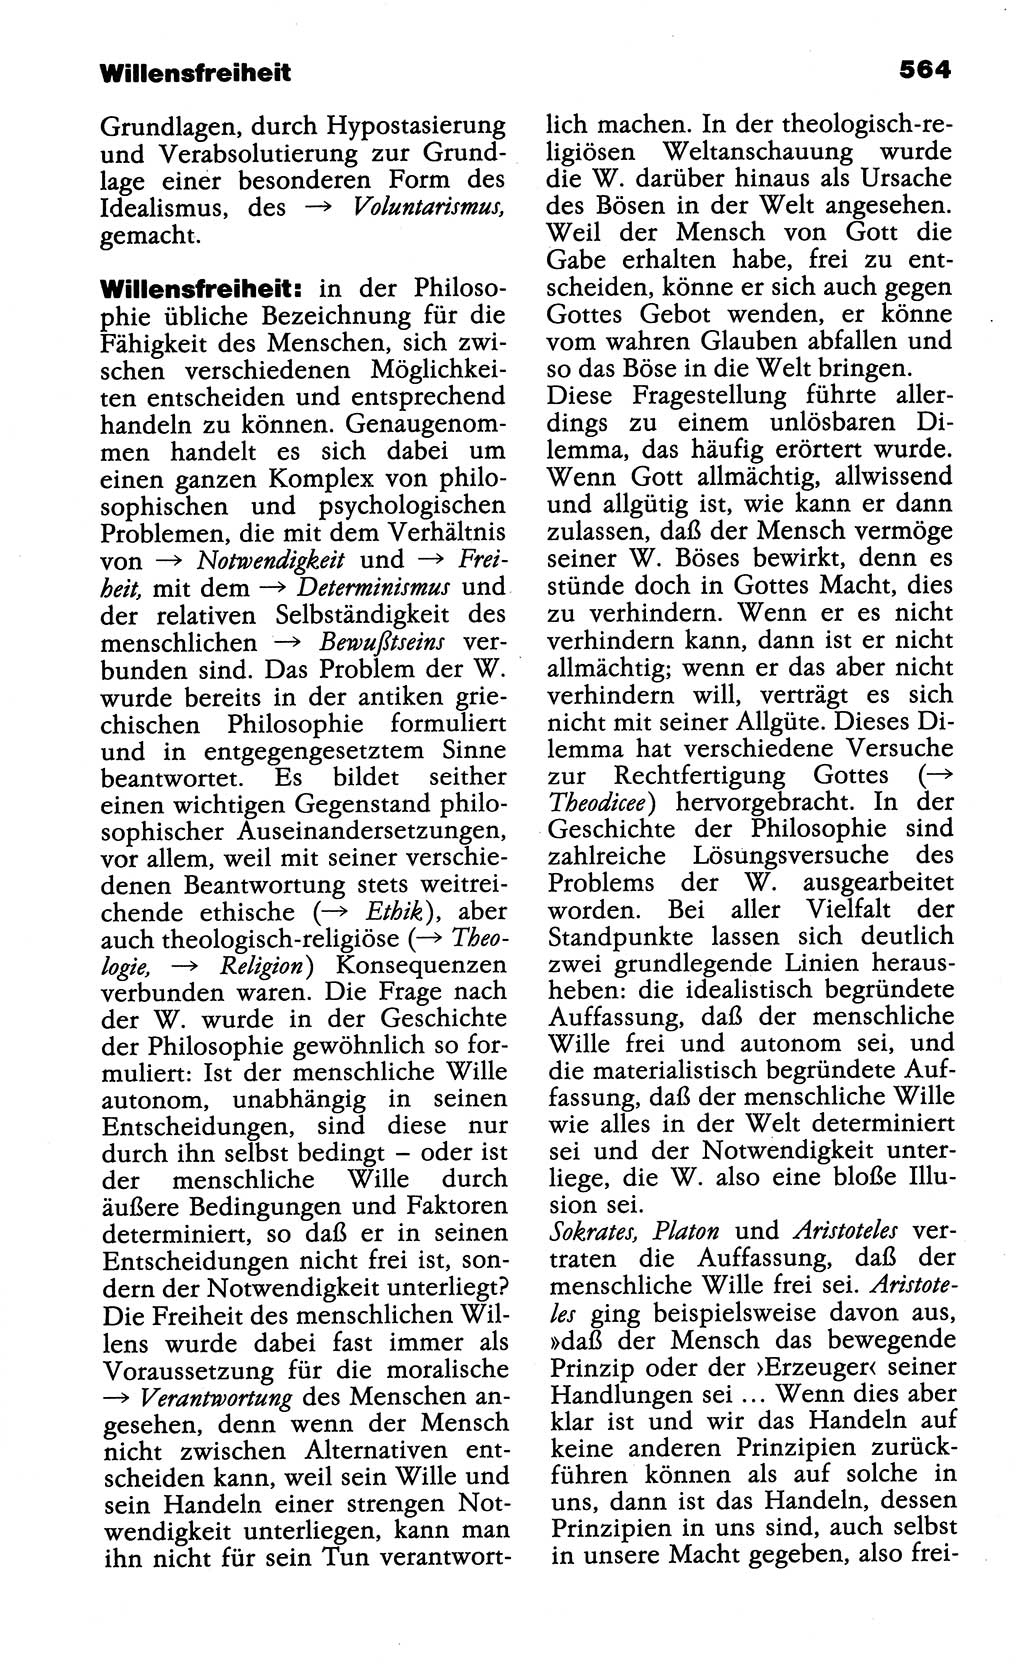 Wörterbuch der marxistisch-leninistischen Philosophie [Deutsche Demokratische Republik (DDR)] 1985, Seite 564 (Wb. ML Phil. DDR 1985, S. 564)